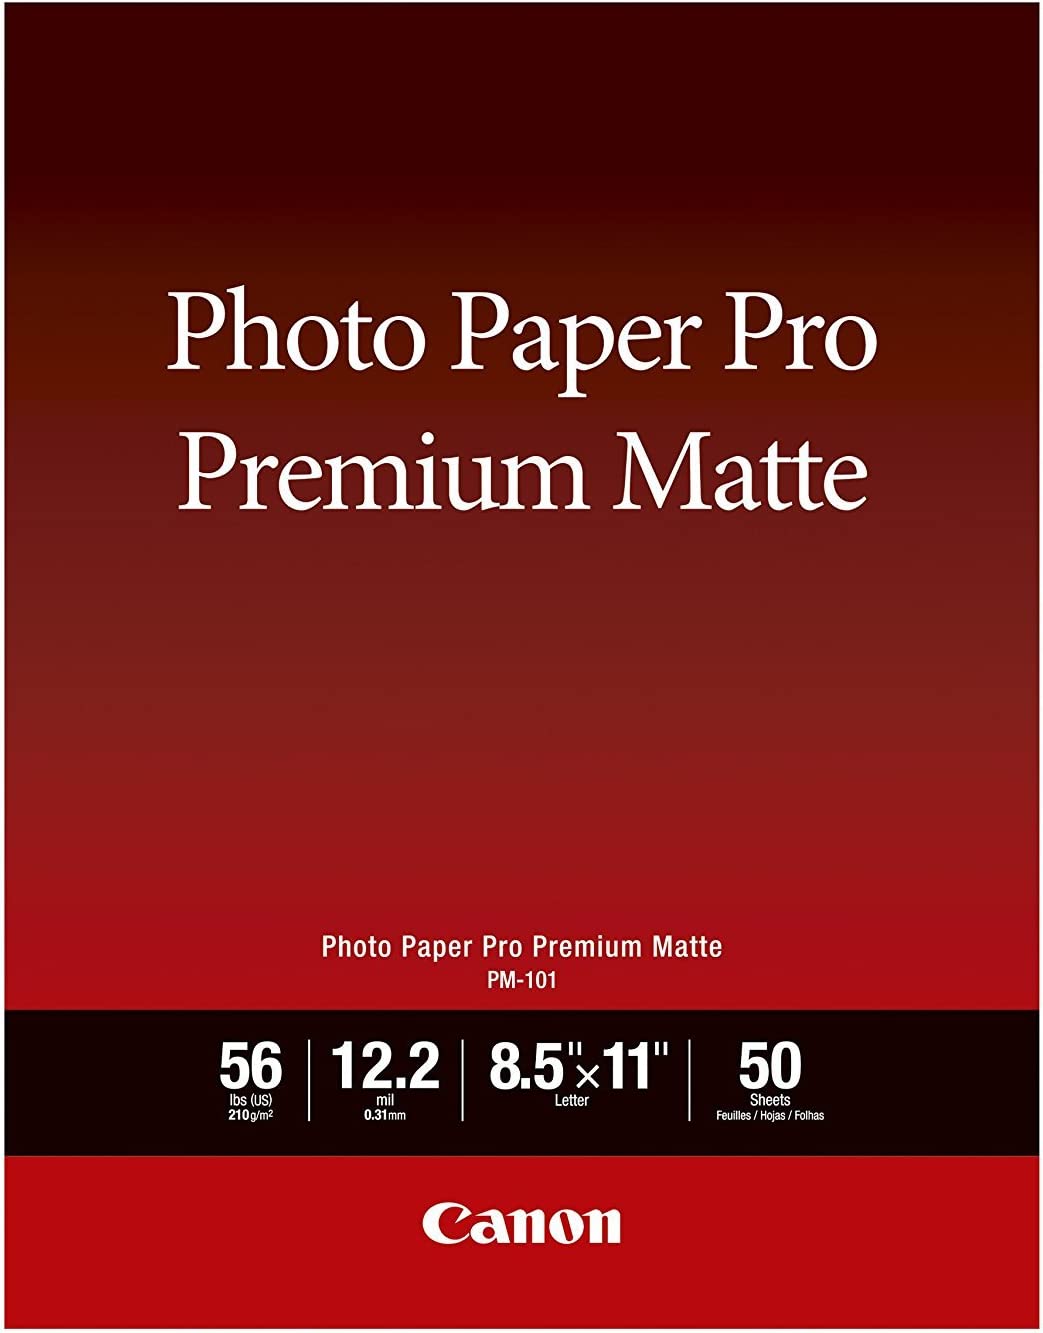 Canon PM-101 LTR 50 remium Photo Pap